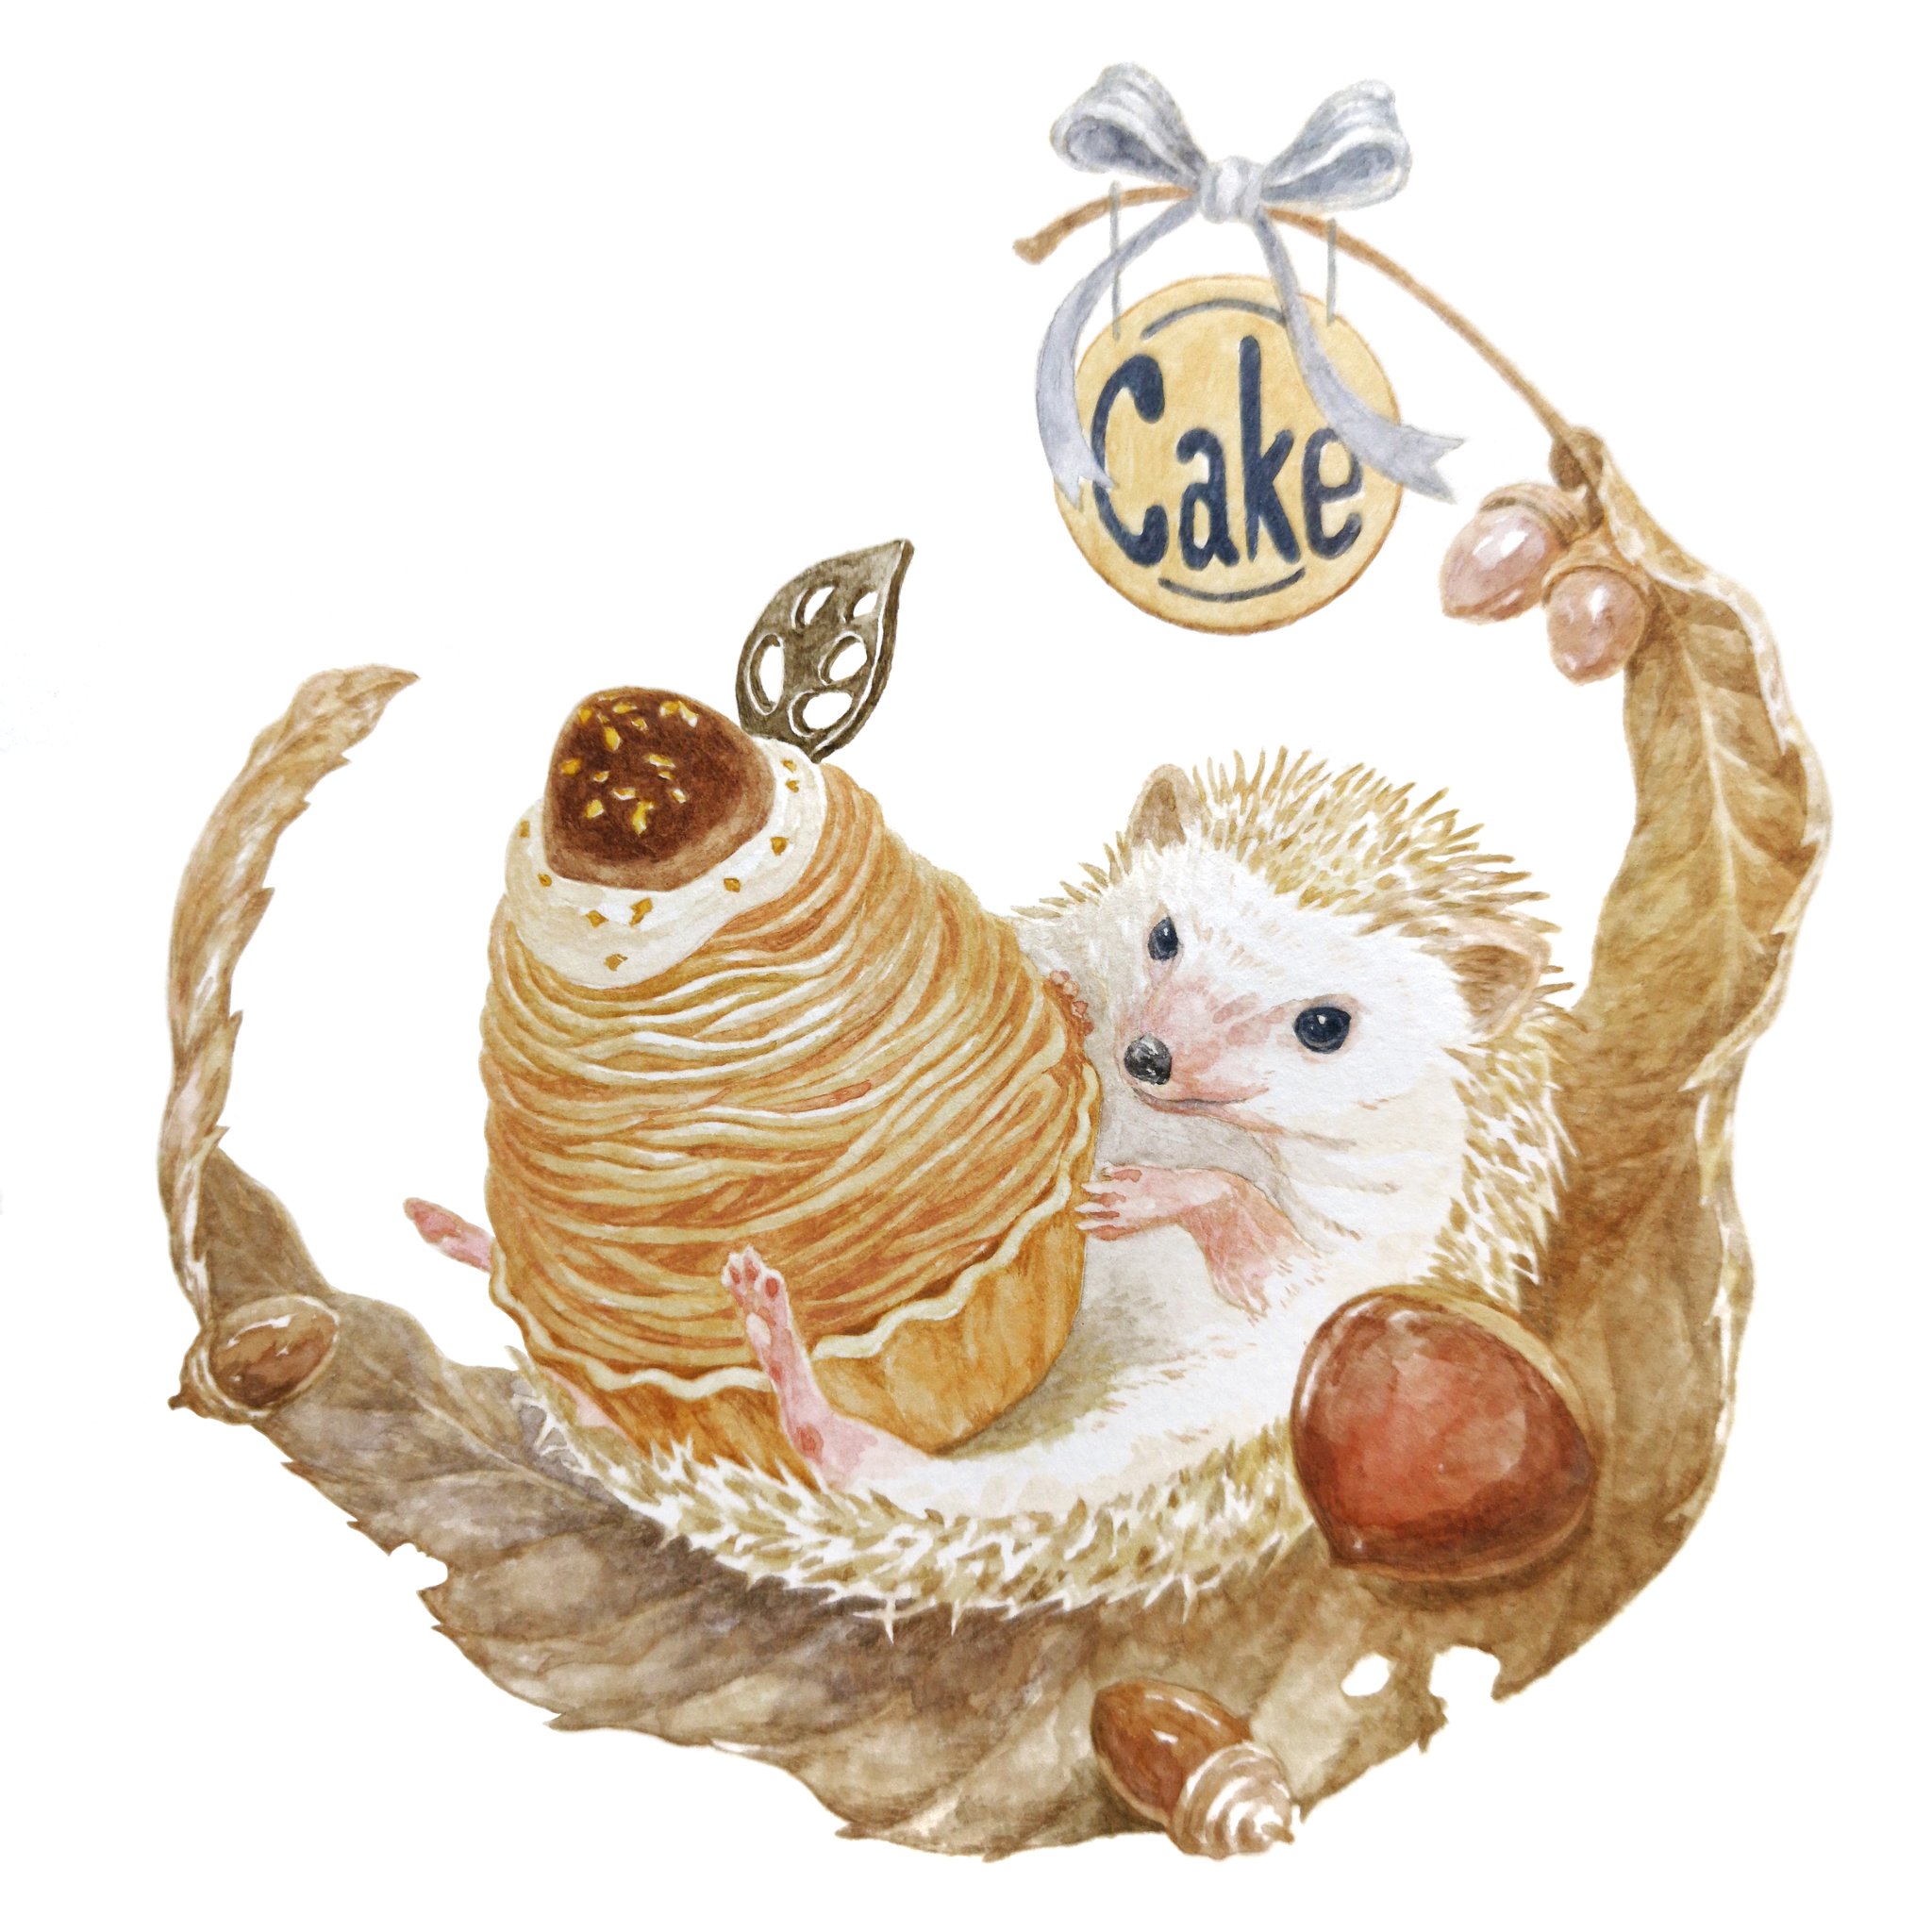 Twitter 上的 Hirotoshi Kanou 森の中のケーキ屋さん モンブランケーキとハリネズミ 今日から９月 実りの秋がやってきますね ハリネズミ モンブラン 秋のスイーツ 動物イラスト 食べ物イラスト Animalillustration Foodillustration T Co